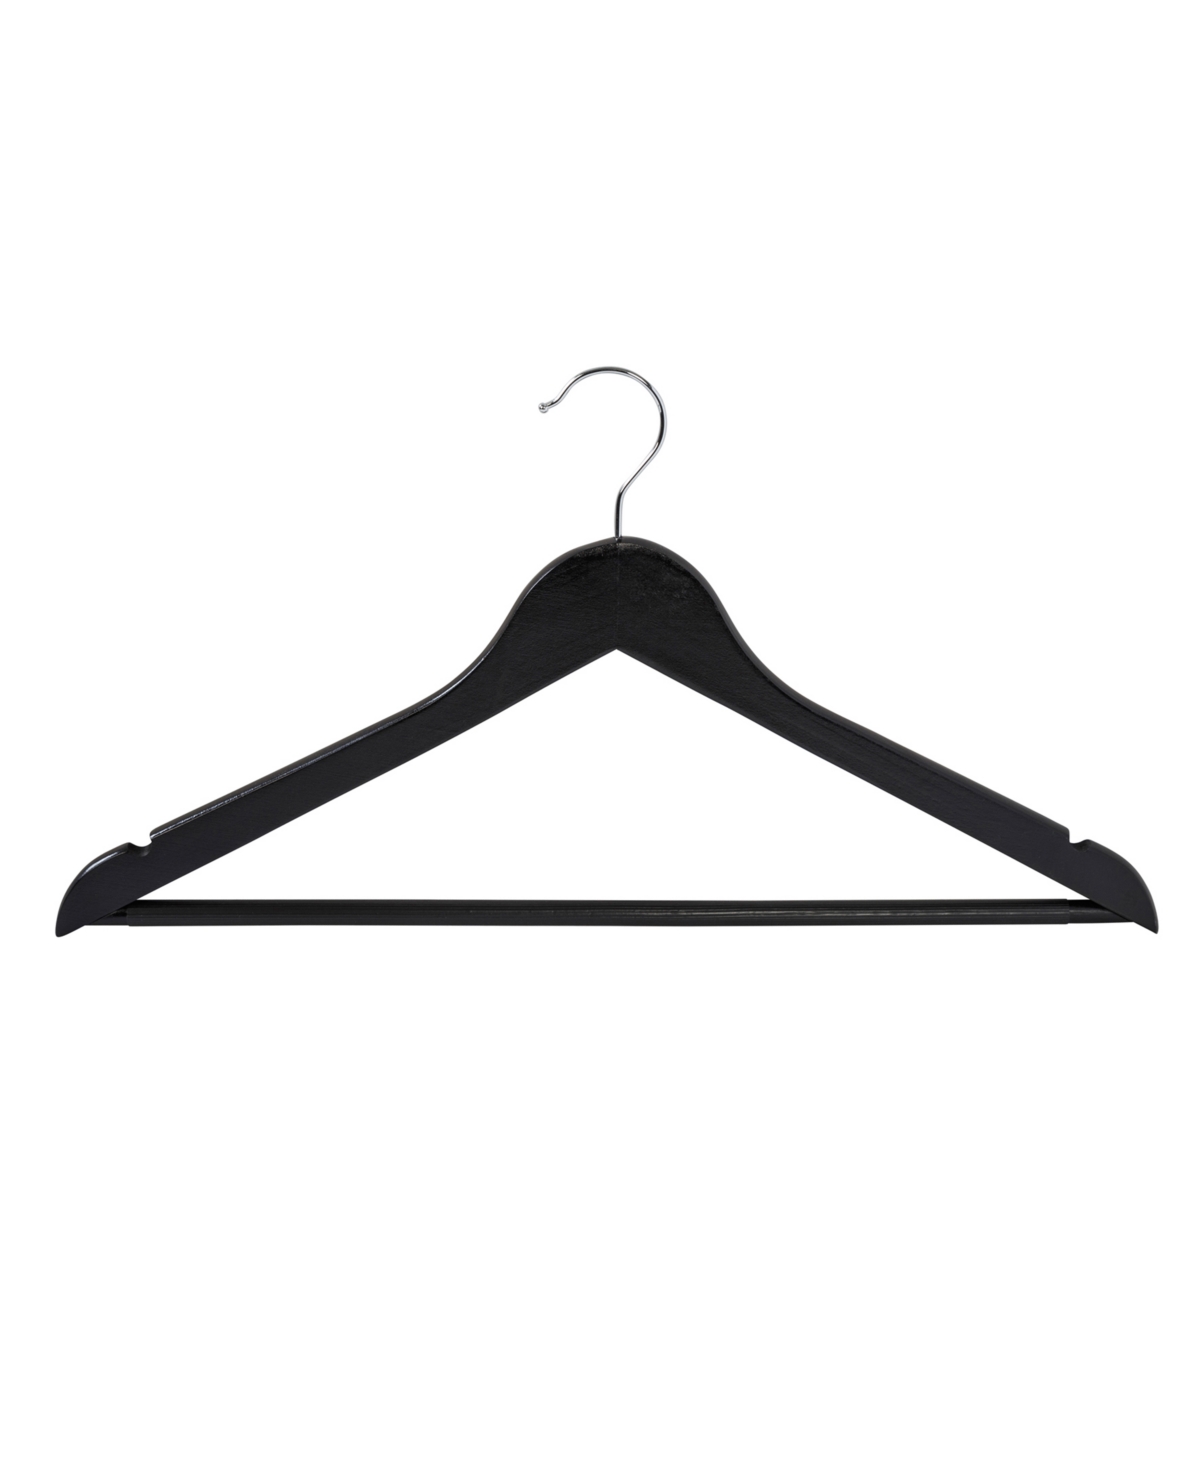 24 Pack Non-Slip Swivel Hook Wood Hangers - Black